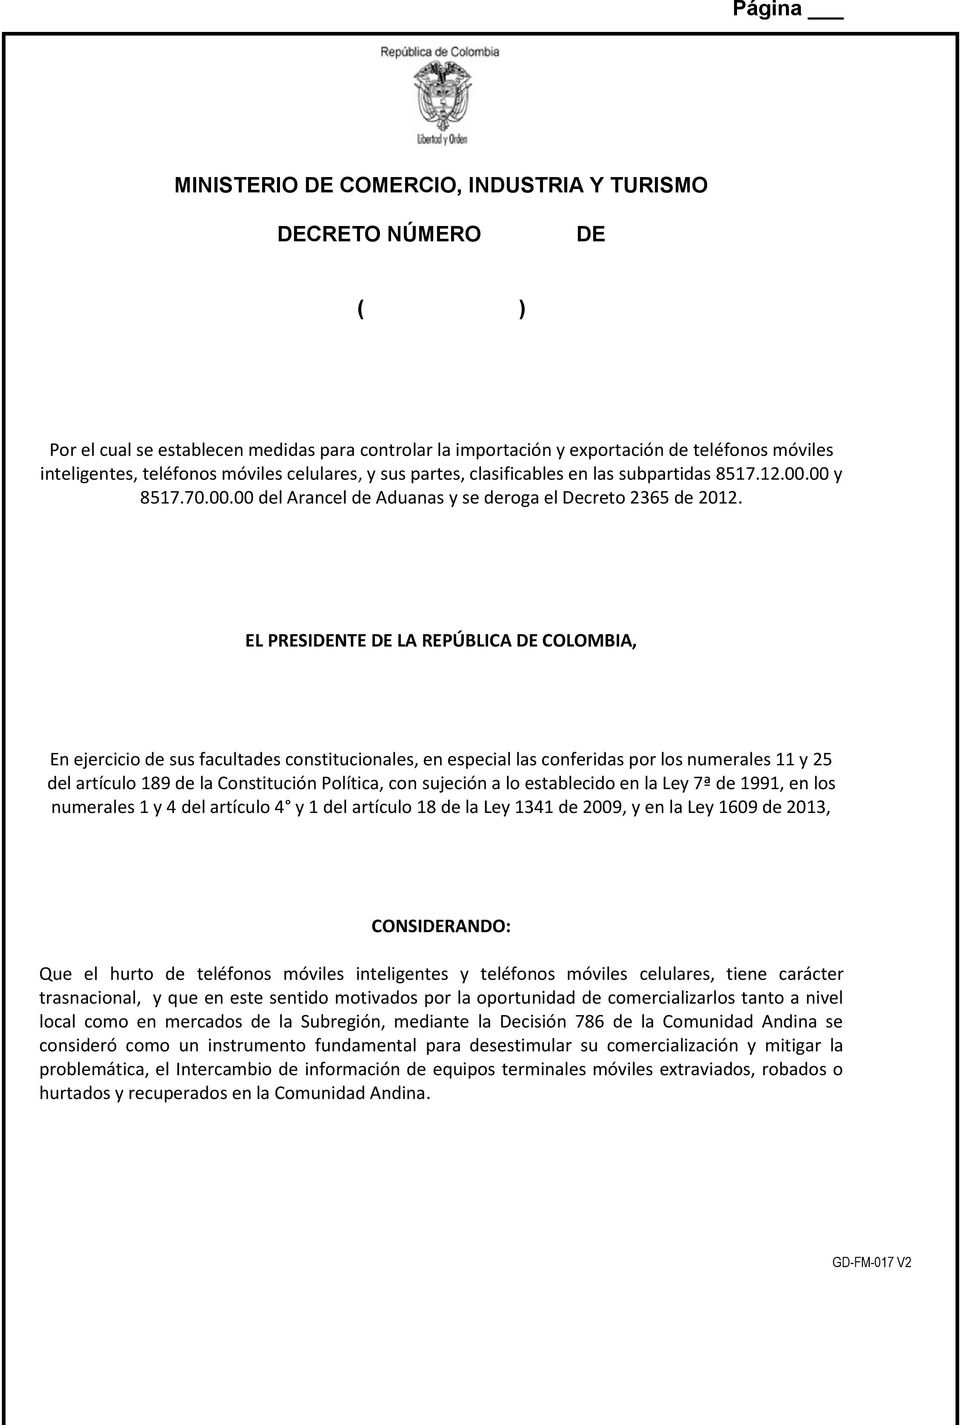 00 y 8517.70.00.00 del Arancel de Aduanas y se EL PRESIDENTE DE LA REPÚBLICA DE COLOMBIA, En ejercicio de sus facultades constitucionales, en especial las conferidas por los numerales 11 y 25 del